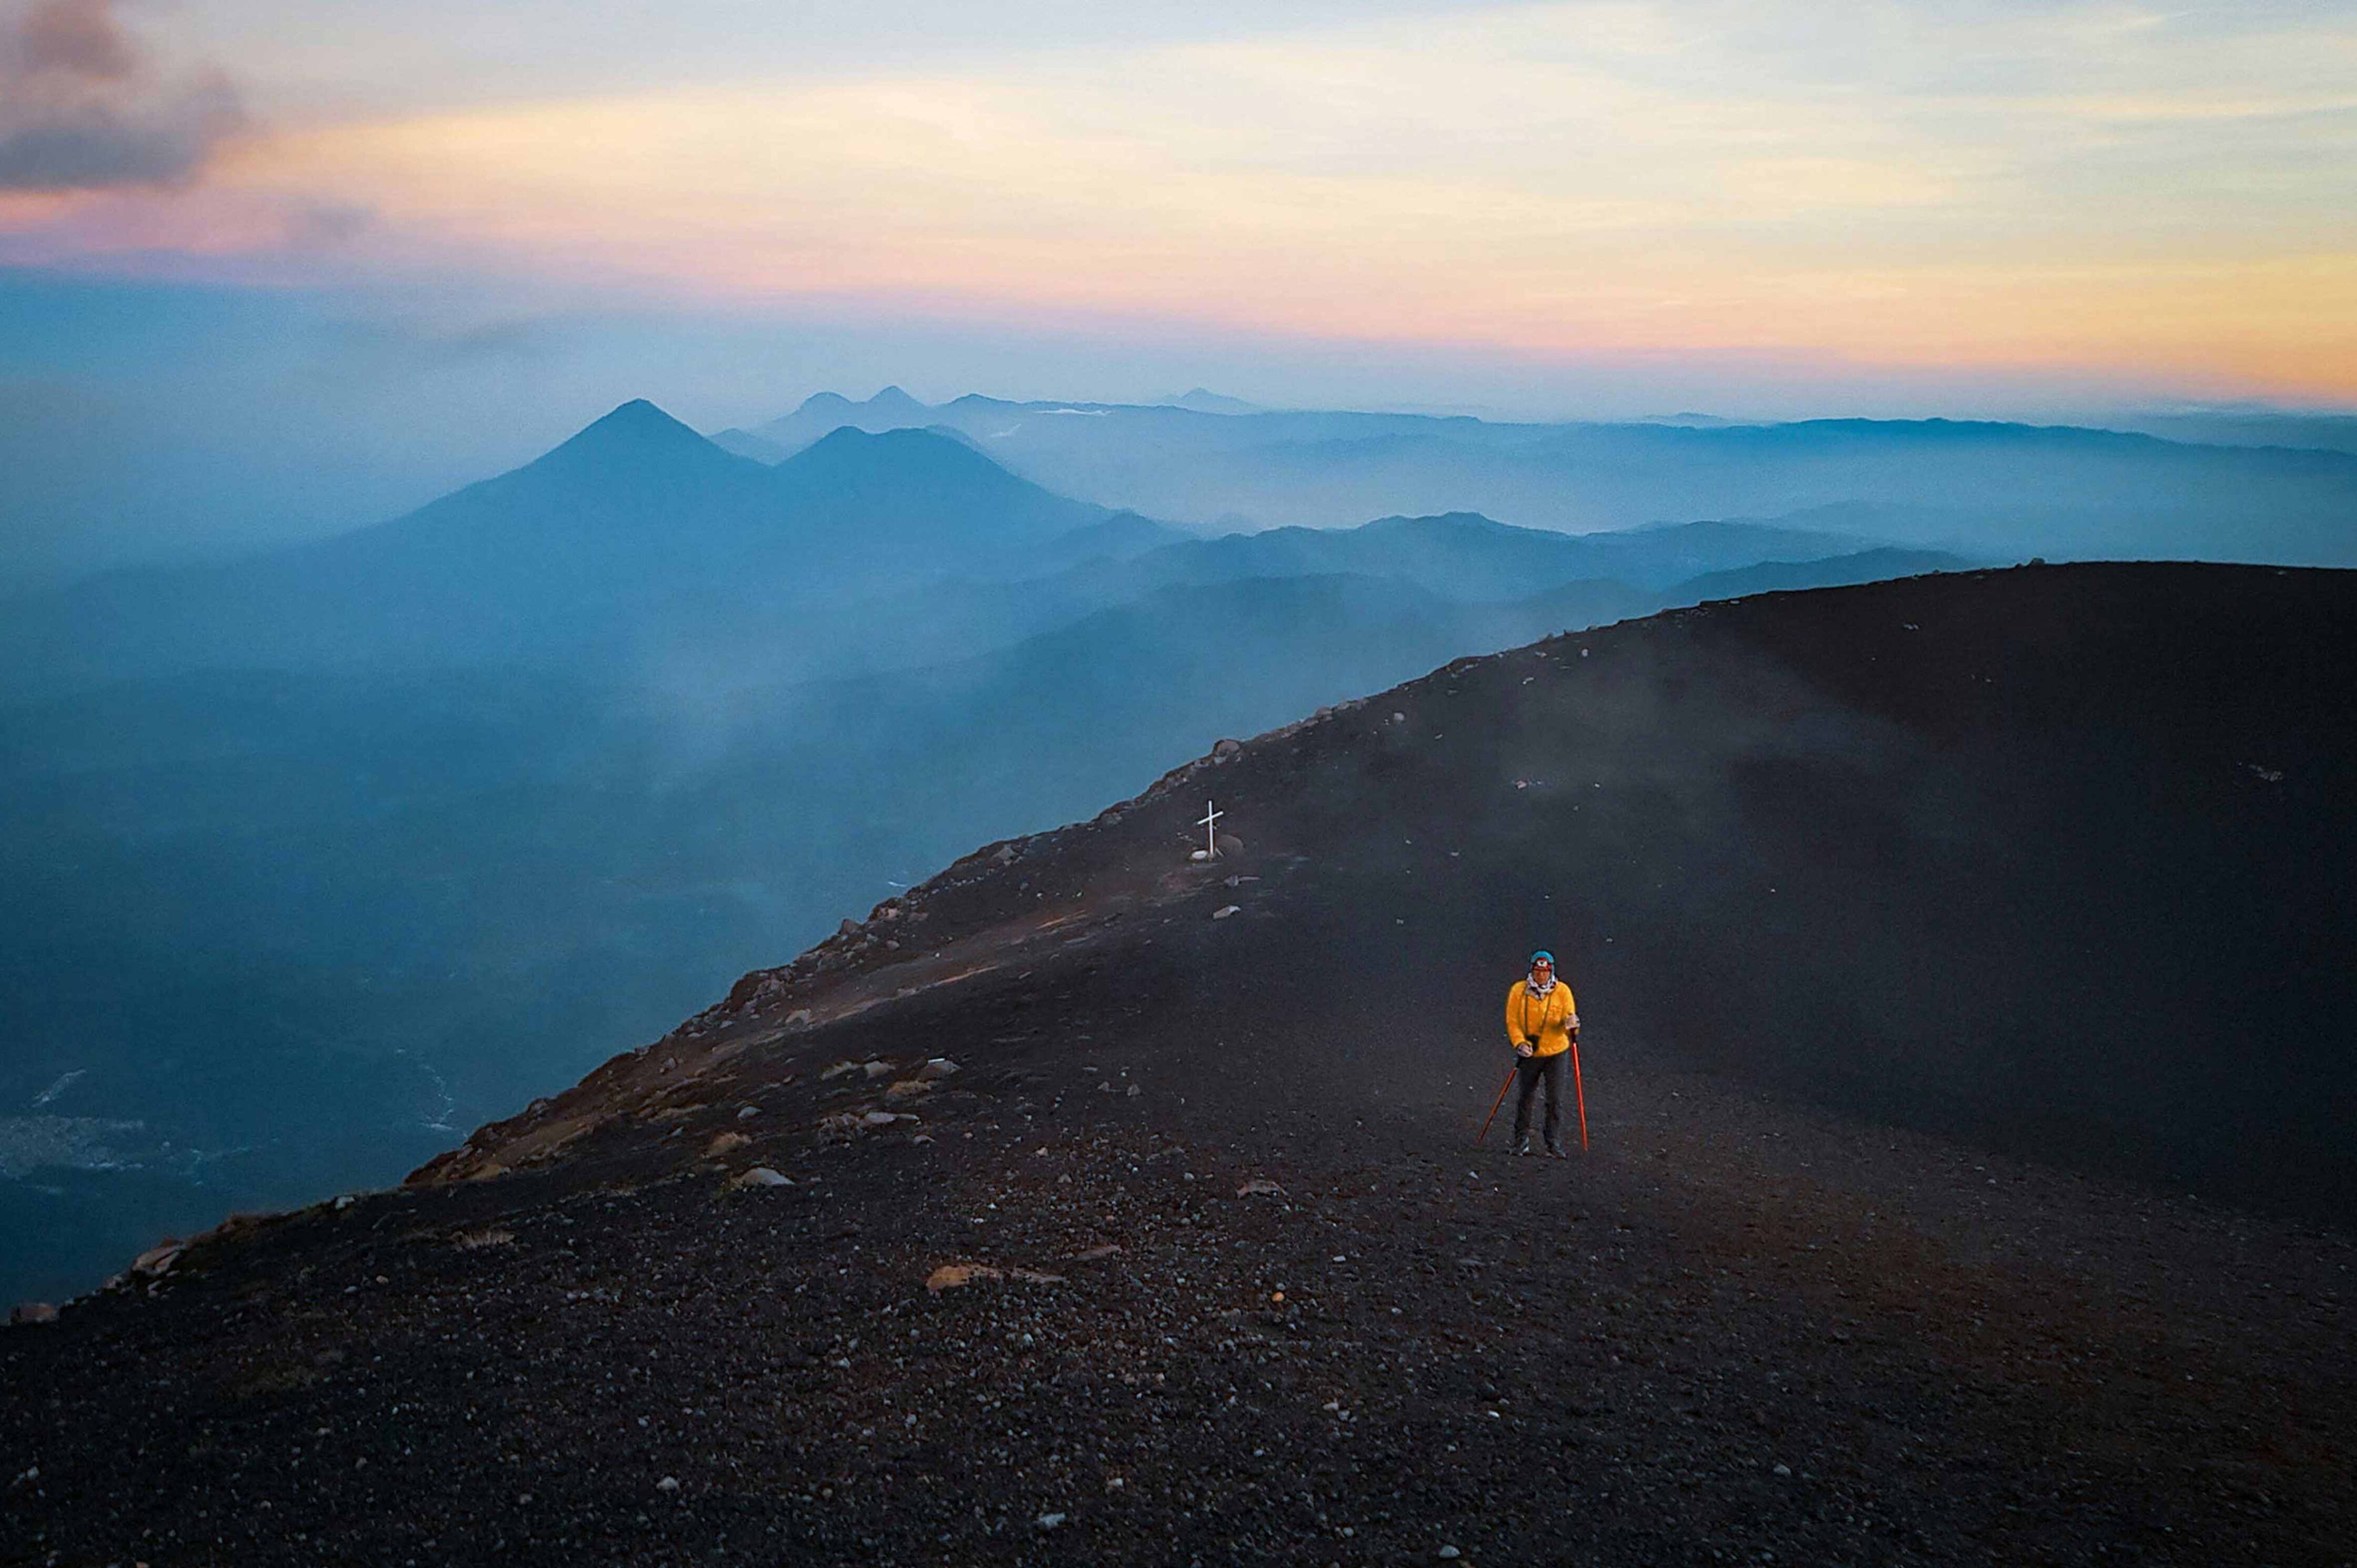 Com és l'ascens al Volcà Acatenango? Una aventura que no us podeu perdre si visiteu Guatemala.